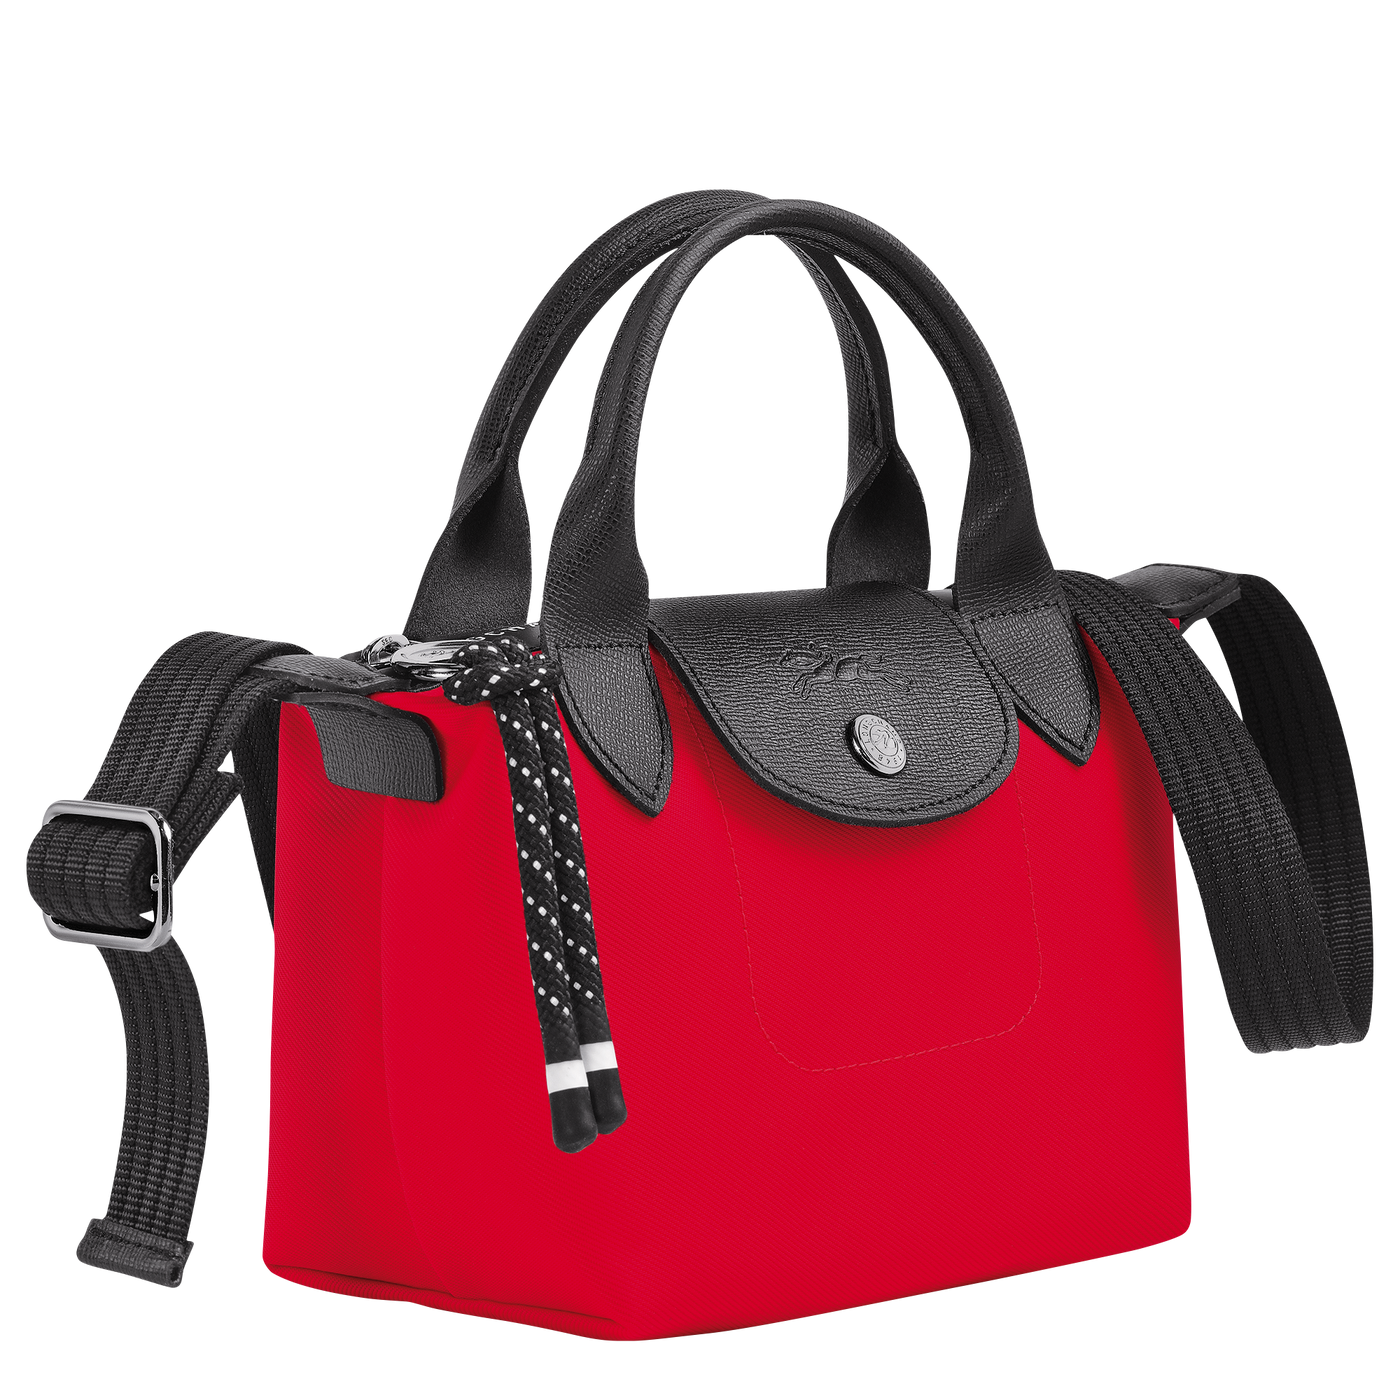 Le Pliage Energy Top Handle Bag Xs - L1500Hsr